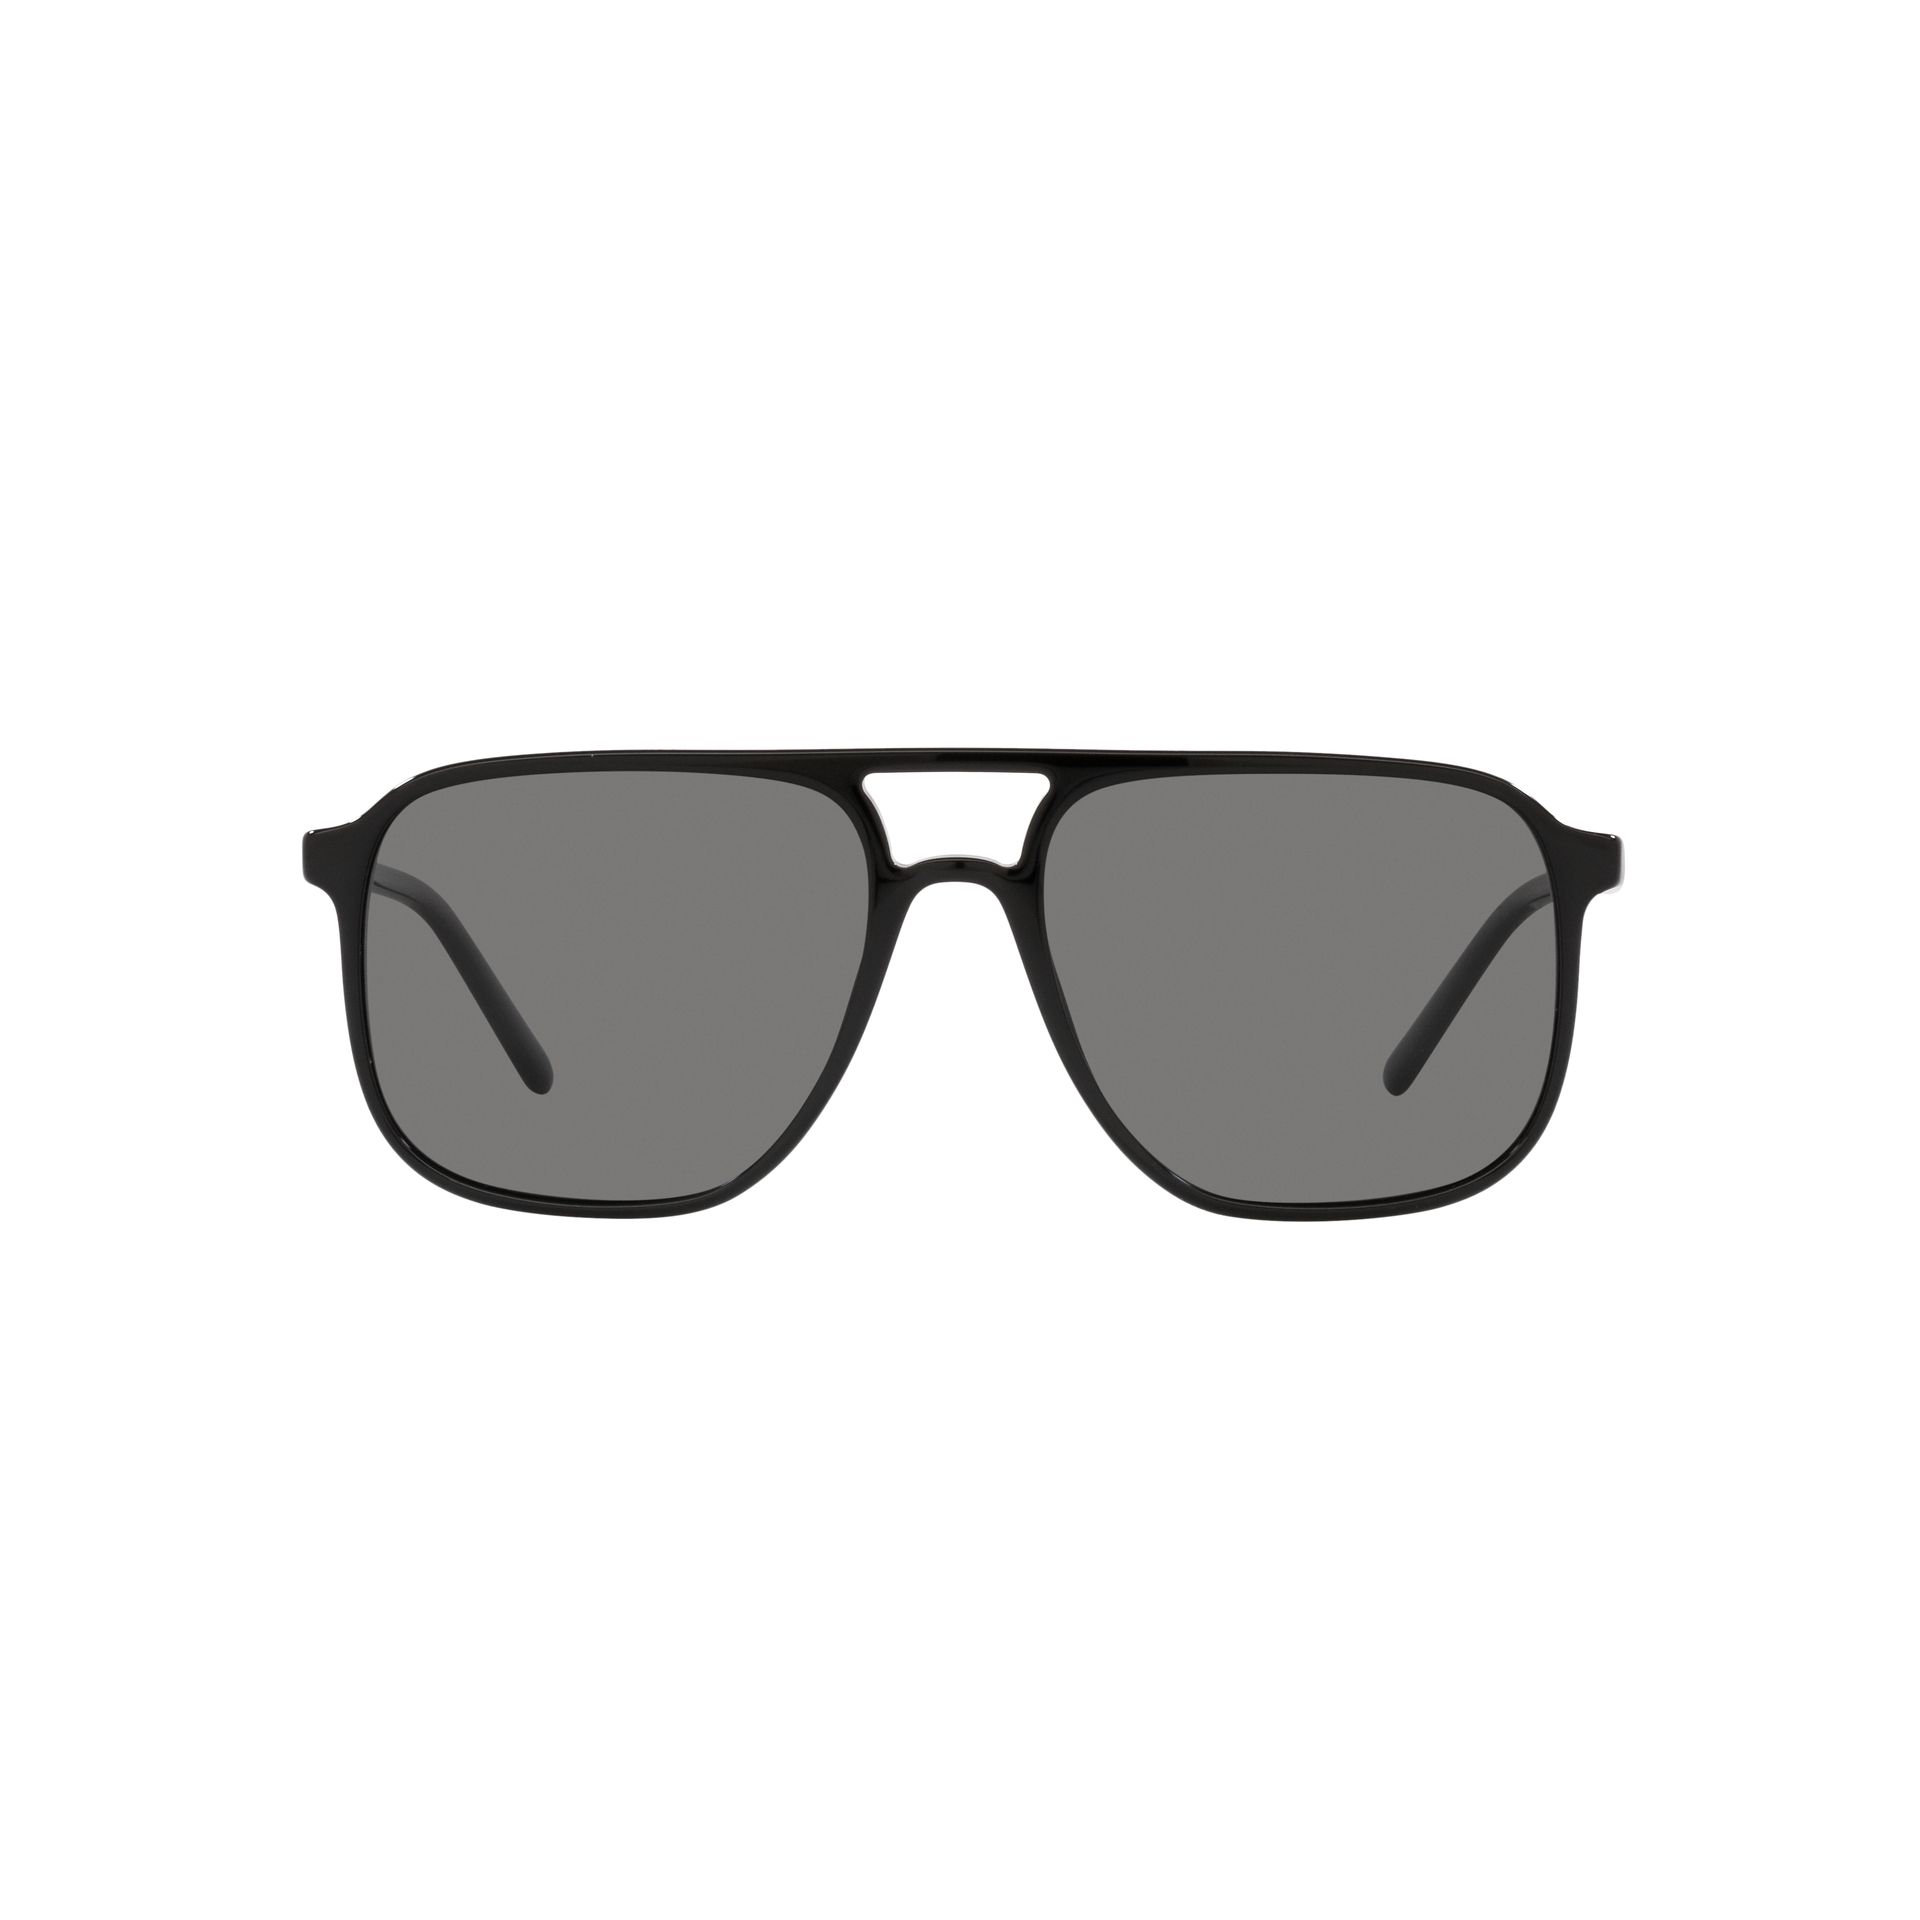 0DG4423 Pilot Sunglasses 501 81 - size 58